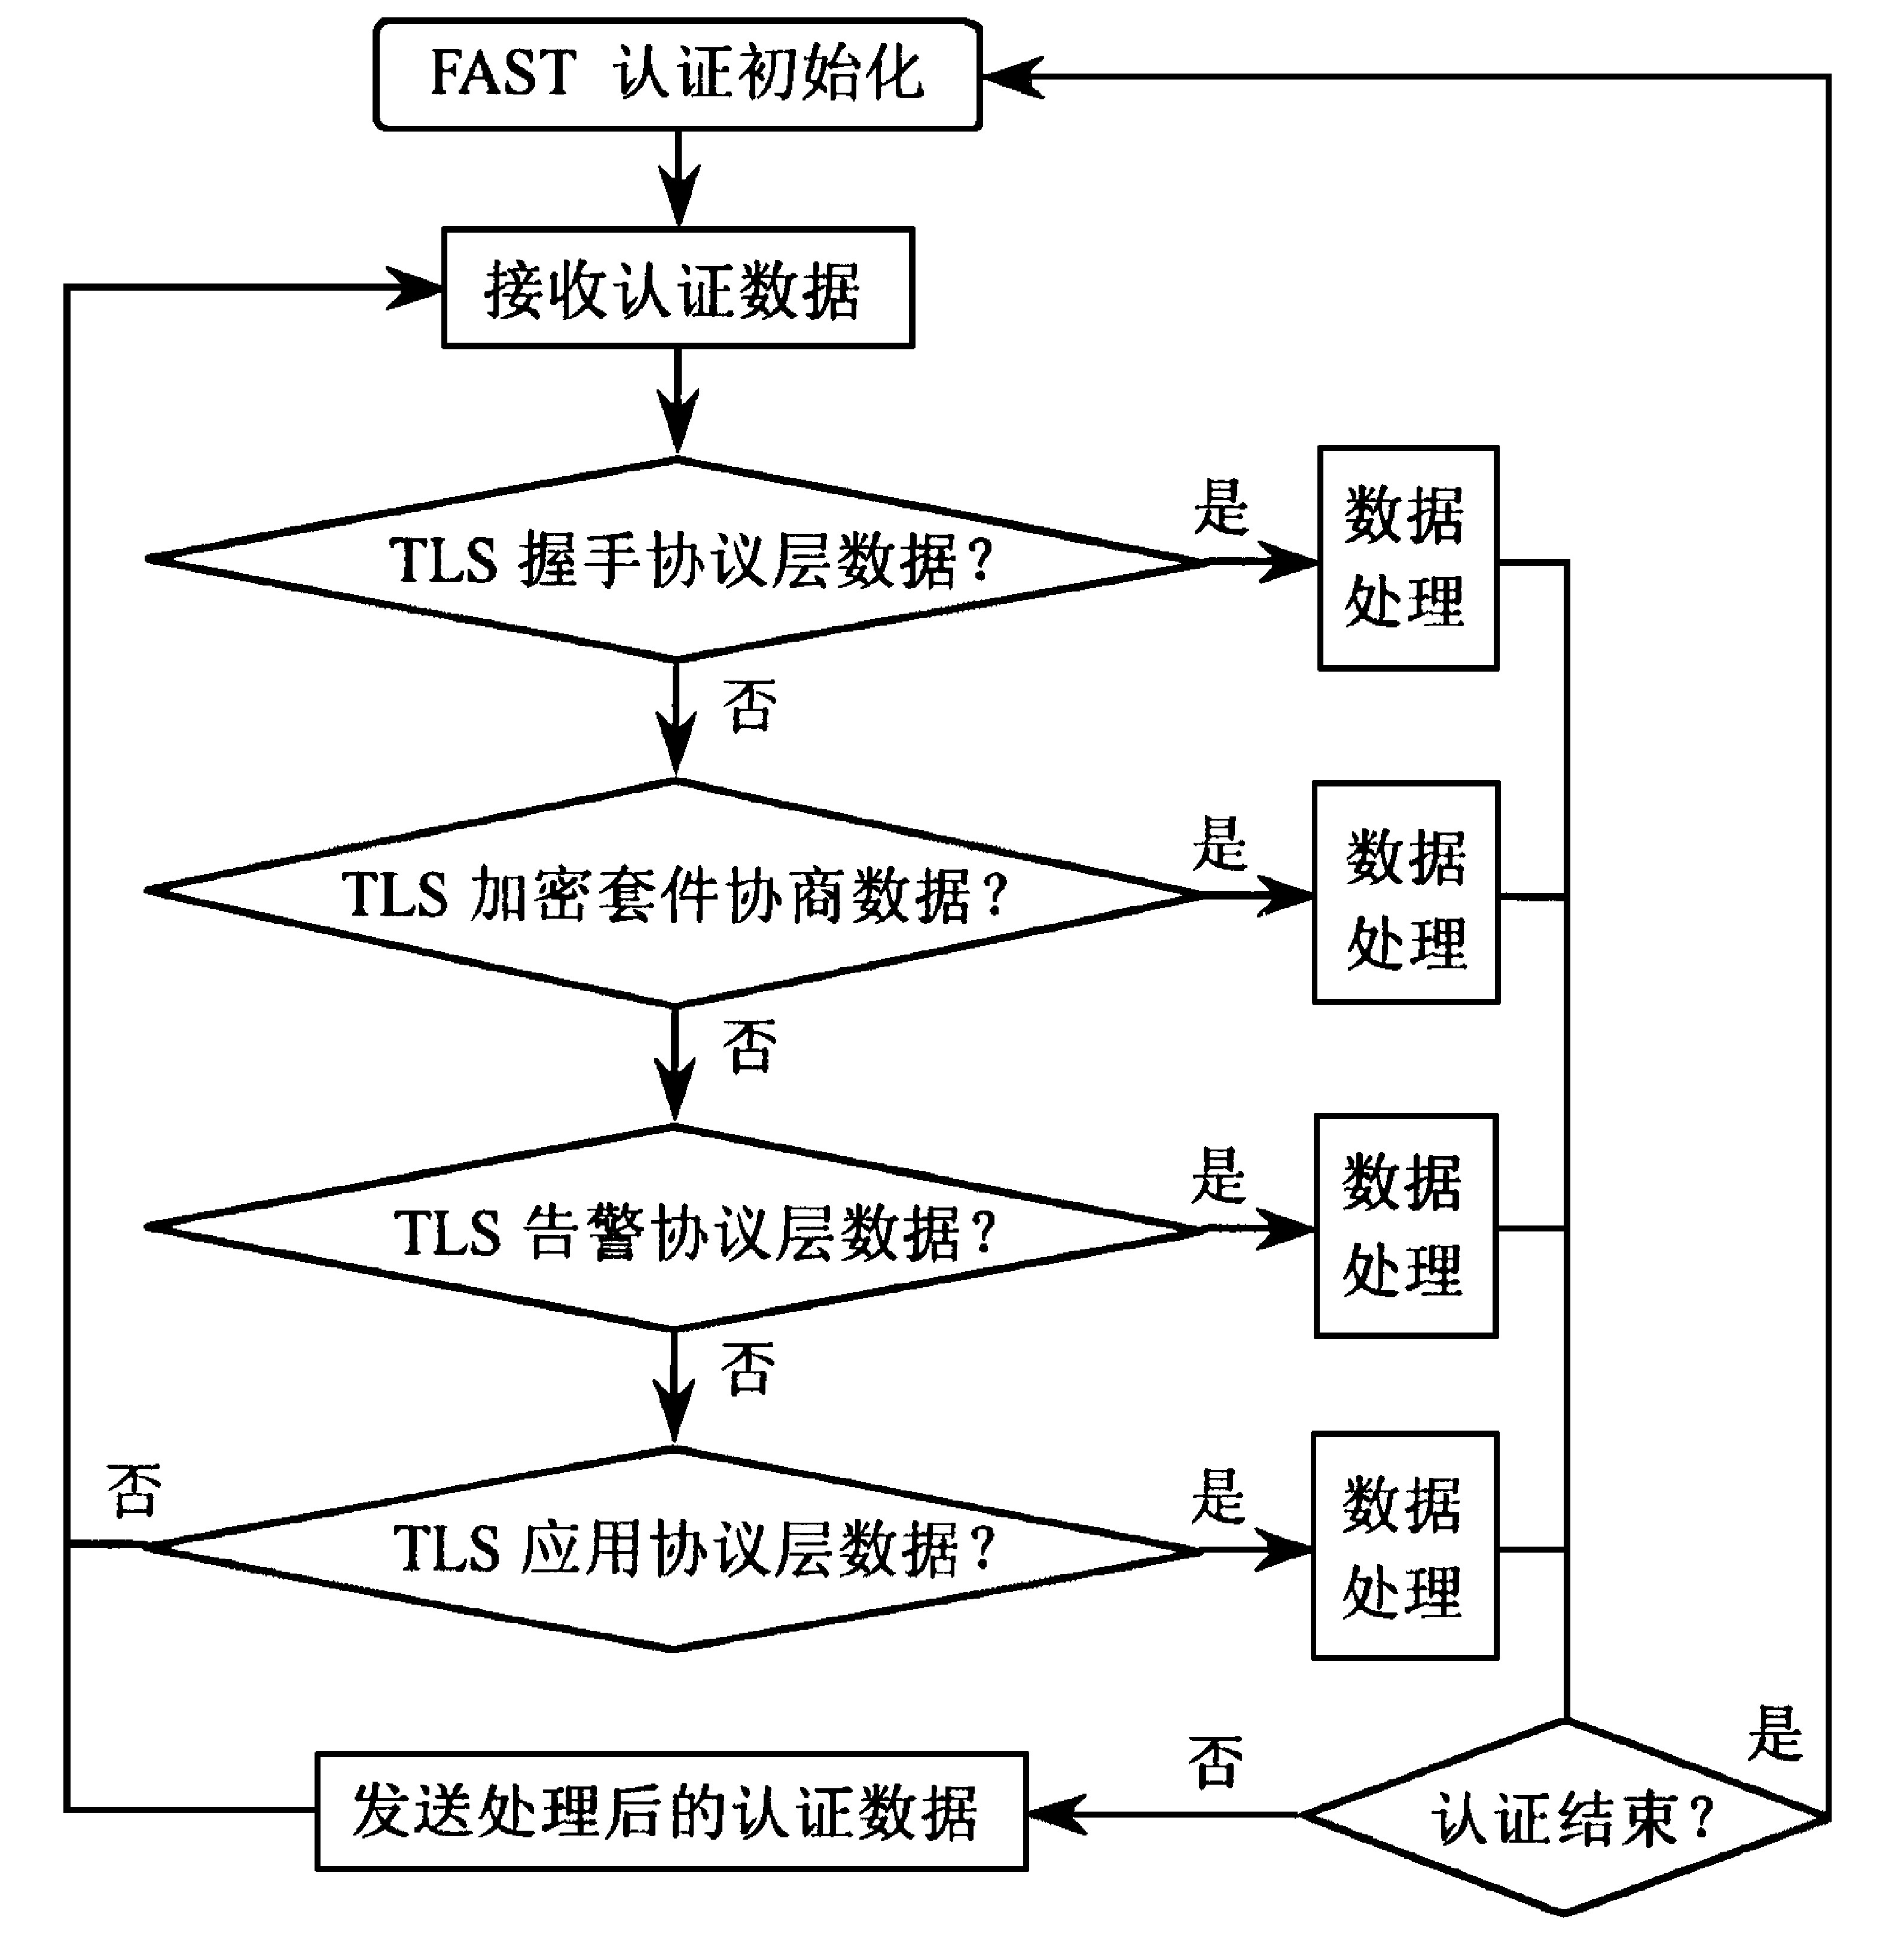 图3 FAST认证数据处理流程图
Fig.3 Authentication data processing 
flow chart of FAST